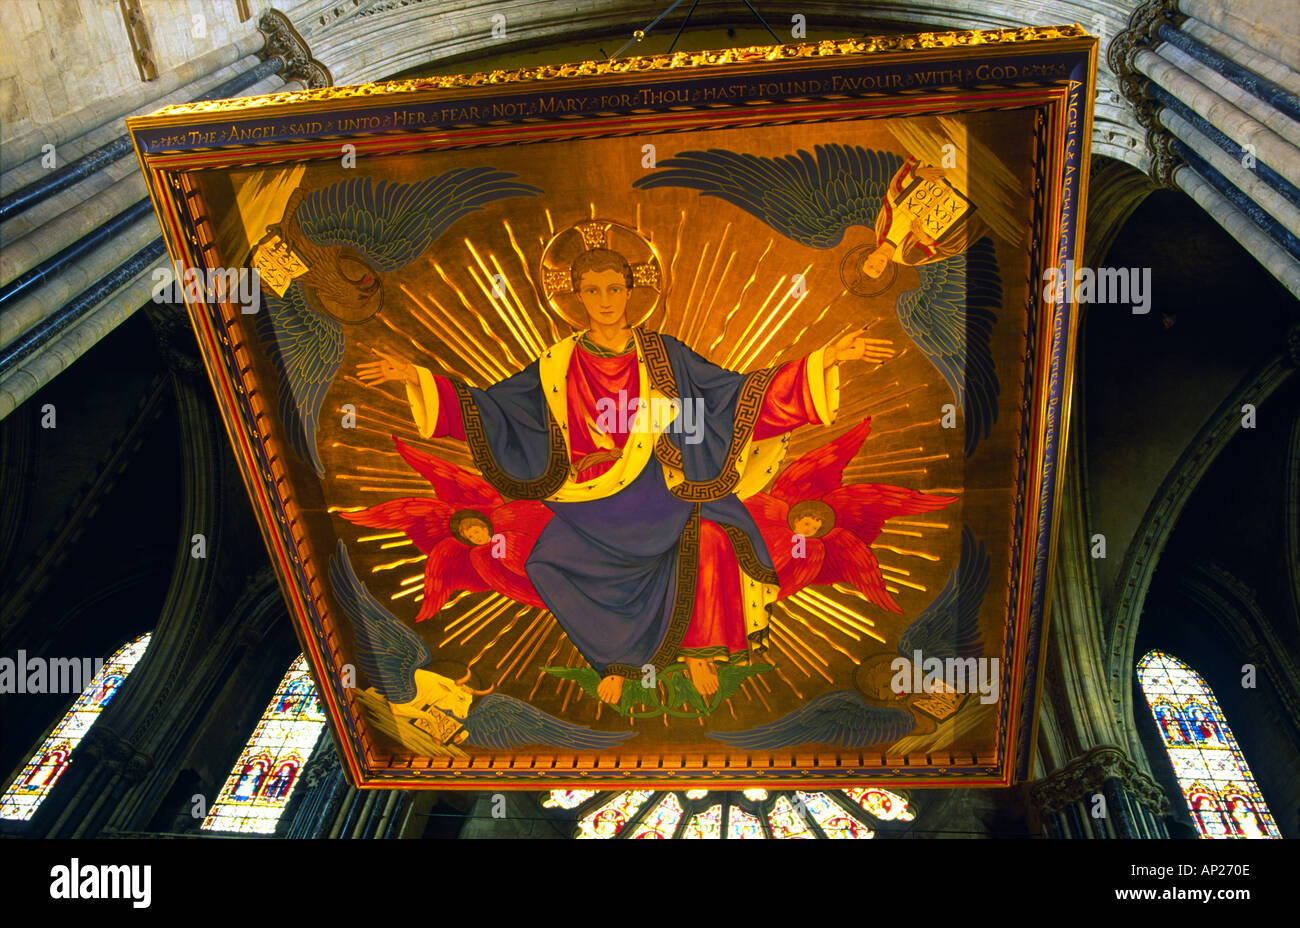 Pintura religiosa, conocido como un comprobador de Cristo en la gloria por encima de la tumba de San Cuthbert en la catedral de Durham, Durham, Inglaterra. Foto de stock